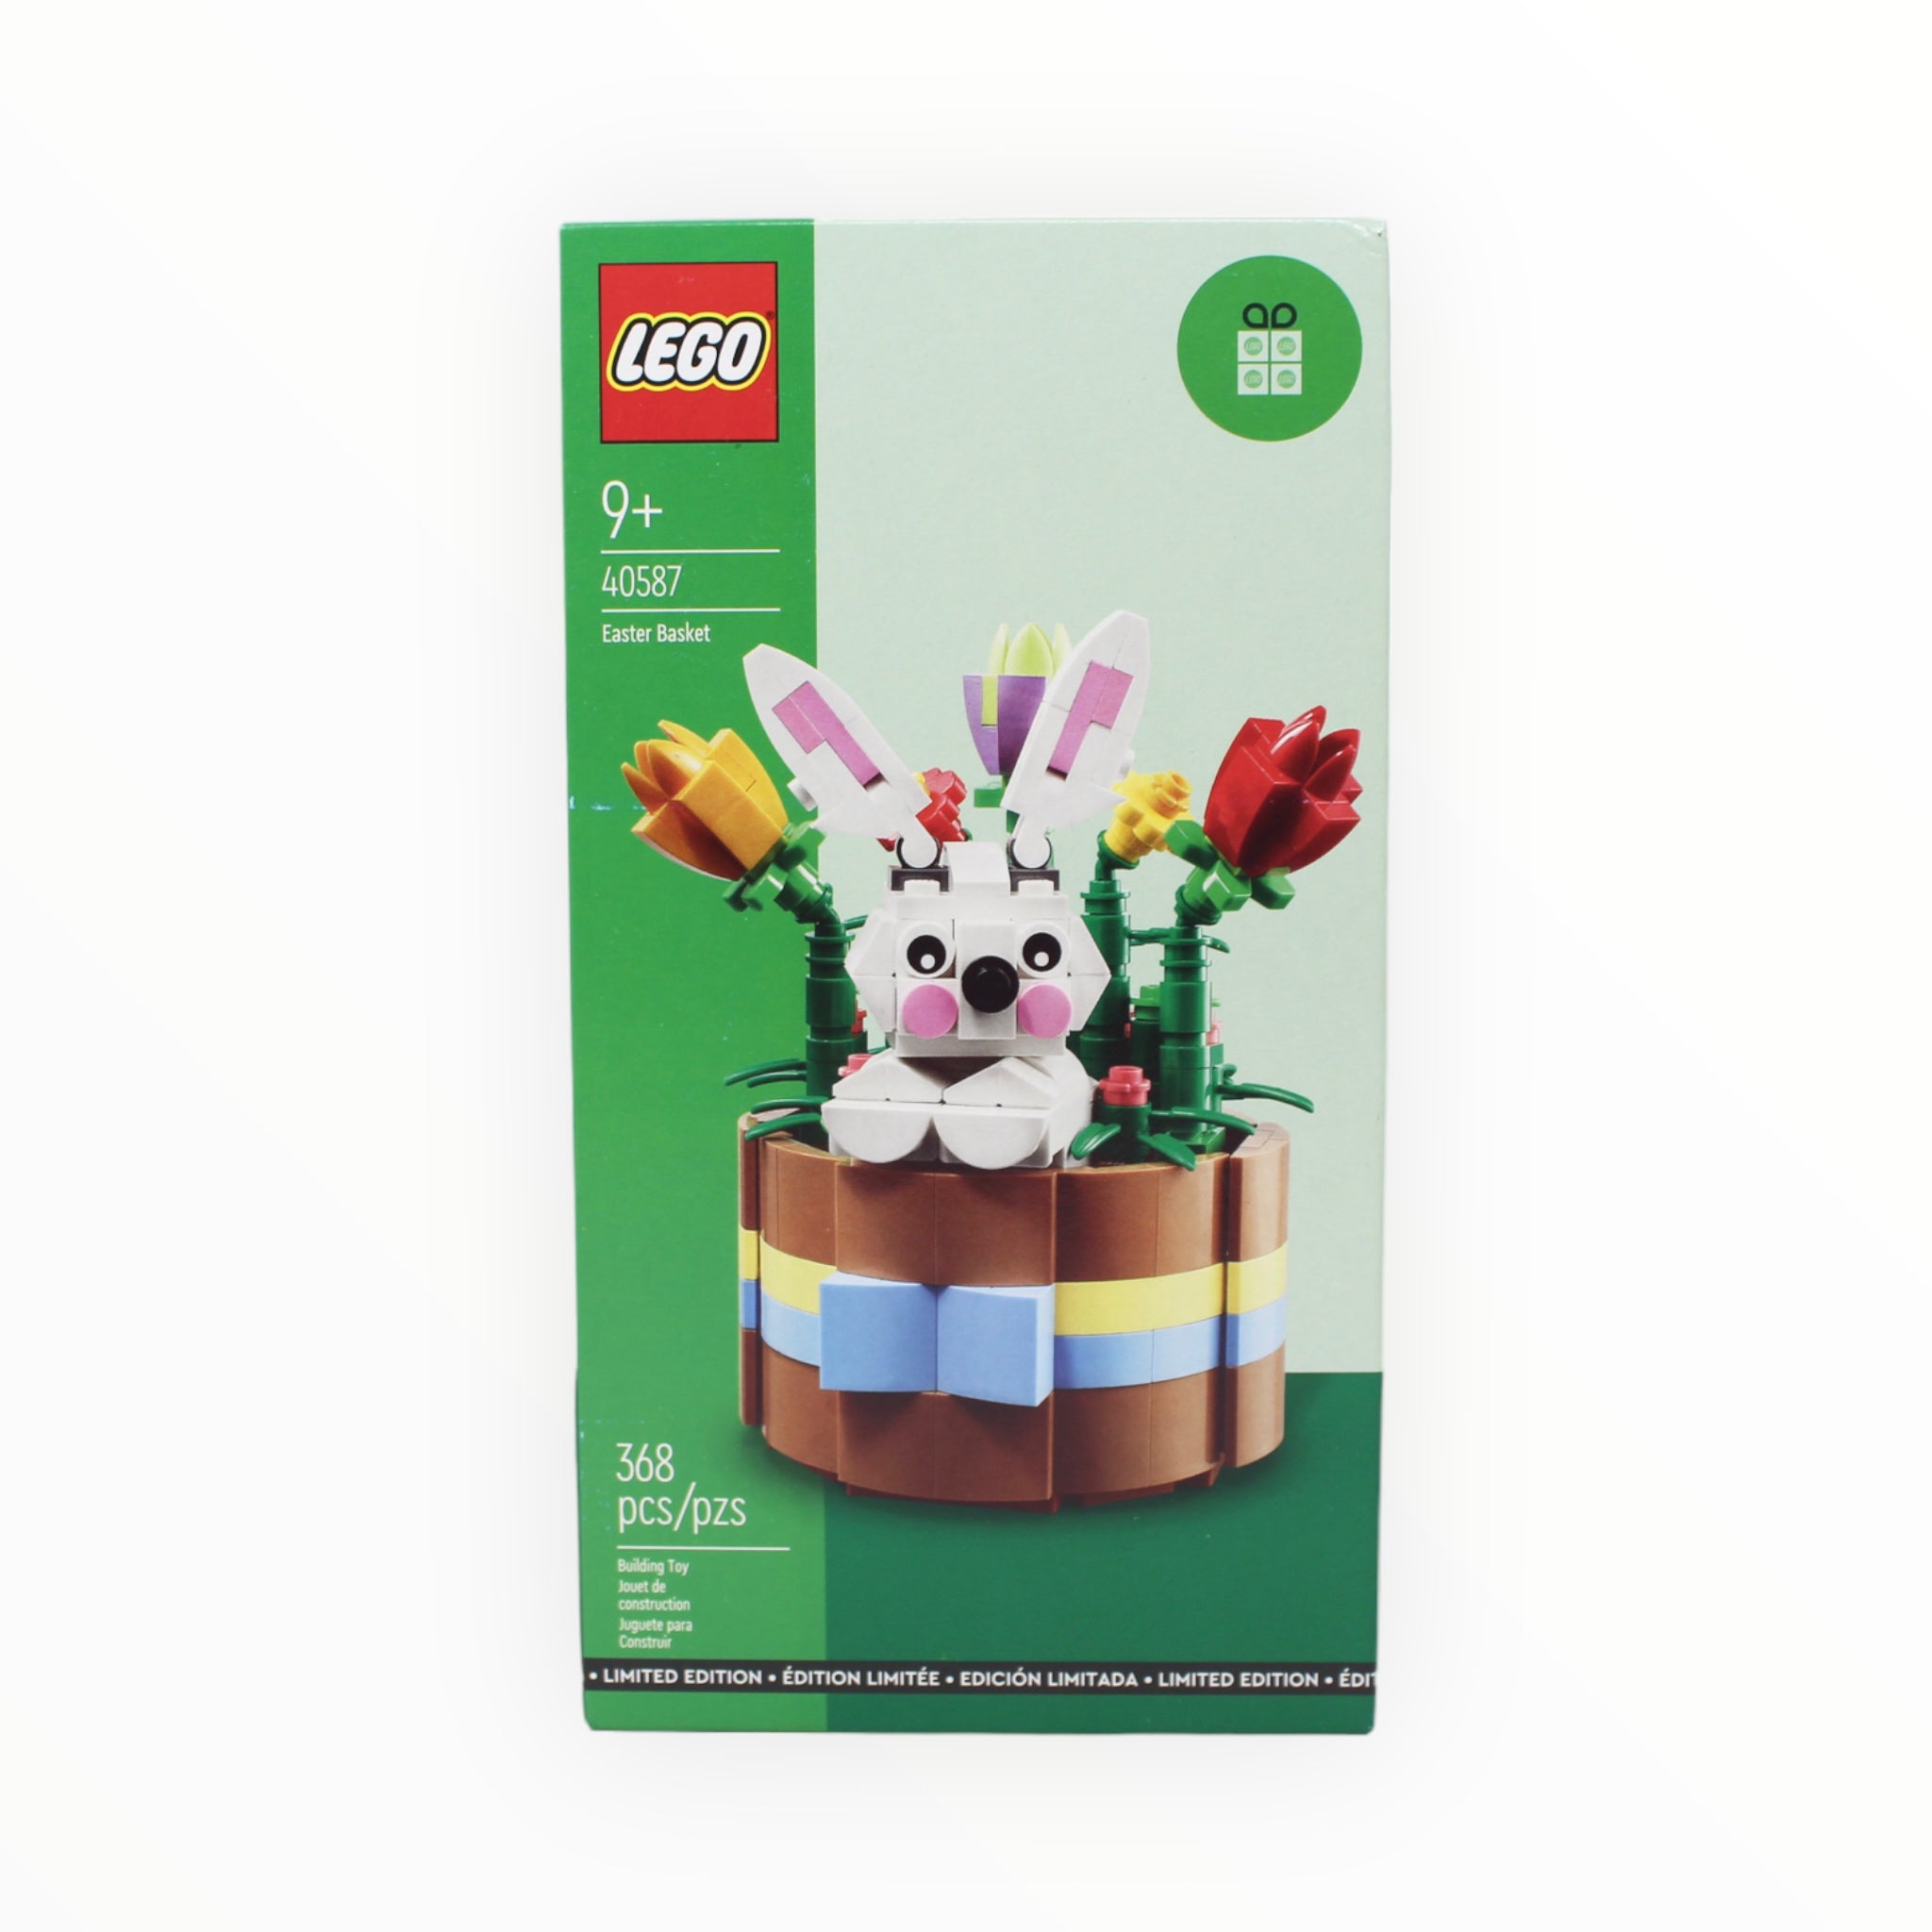 Retired Set 40587 LEGO Easter Basket